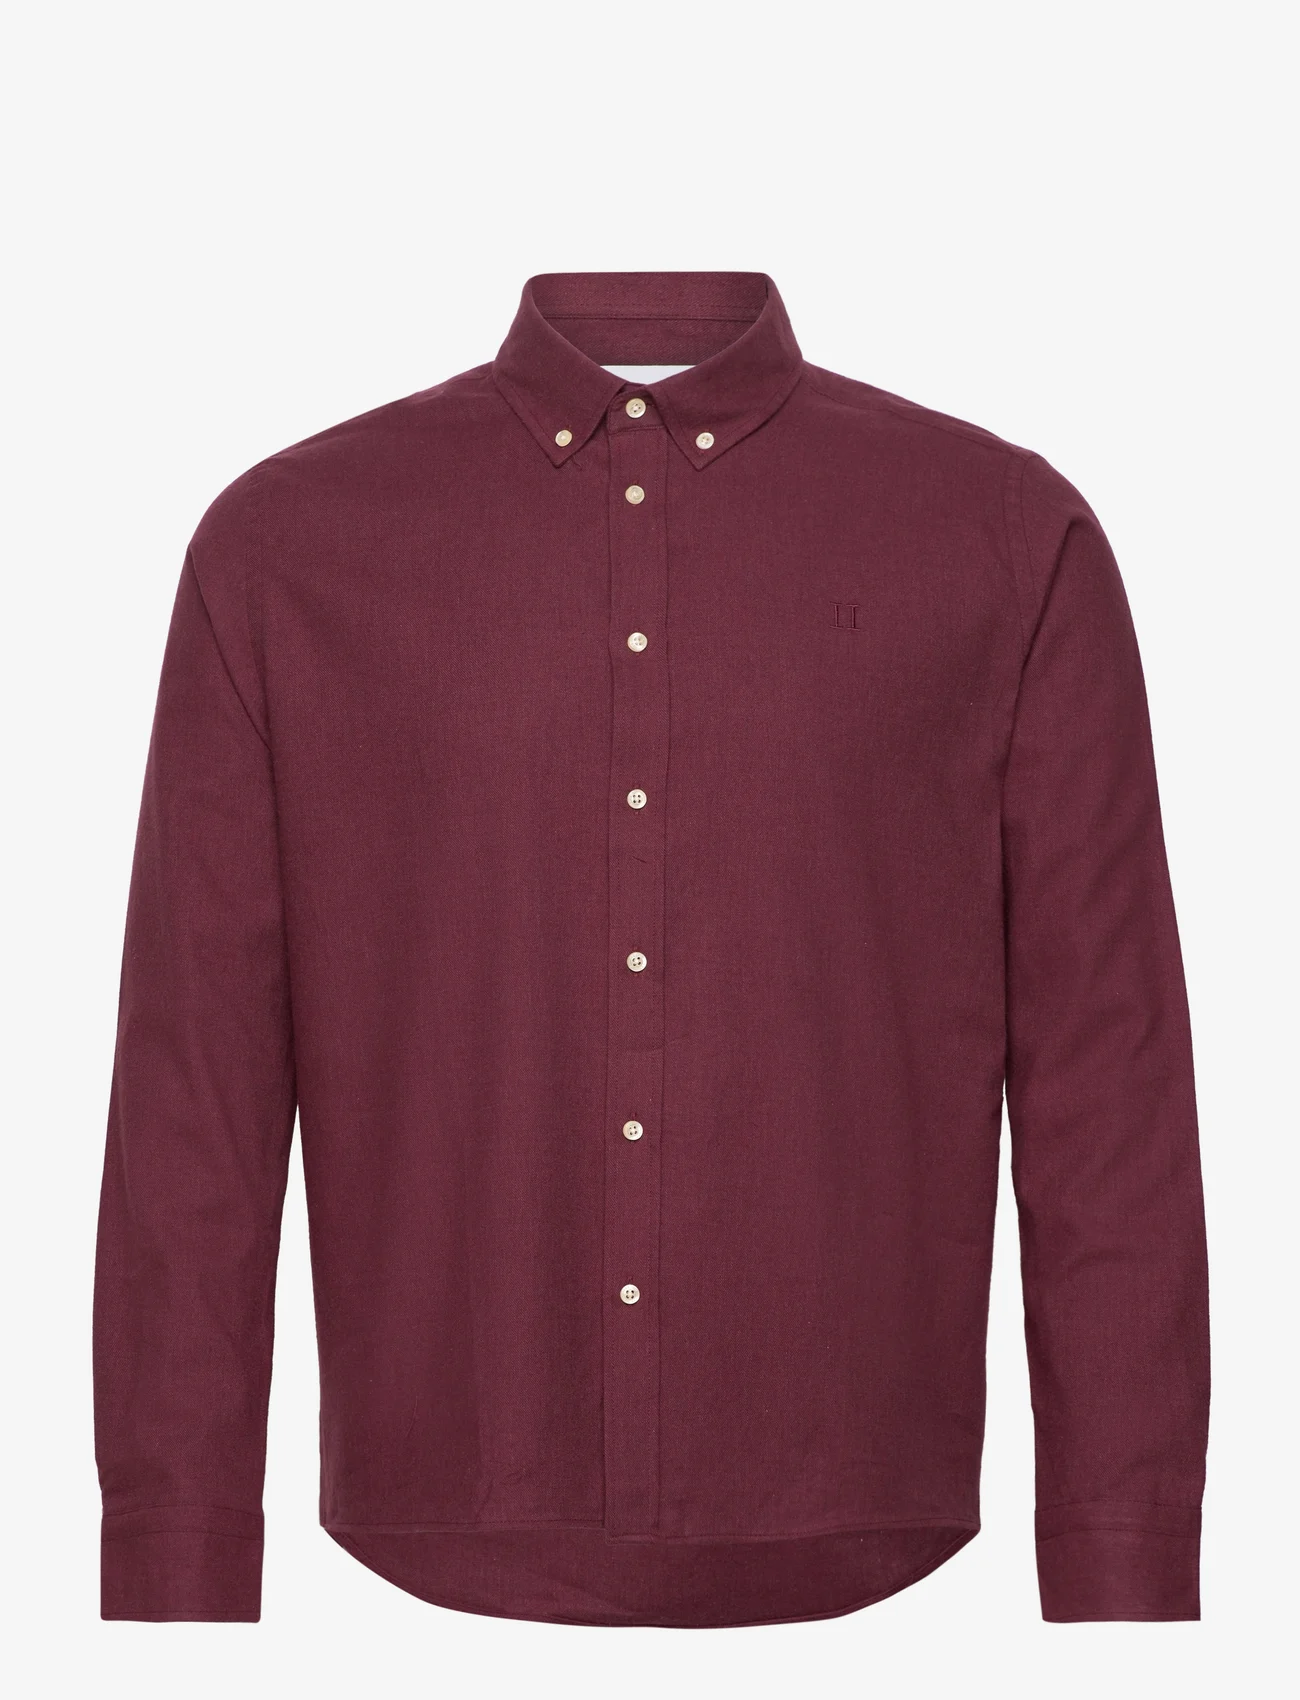 Les Deux - Desert Reg Shirt - basic skjorter - sassafras melange - 0